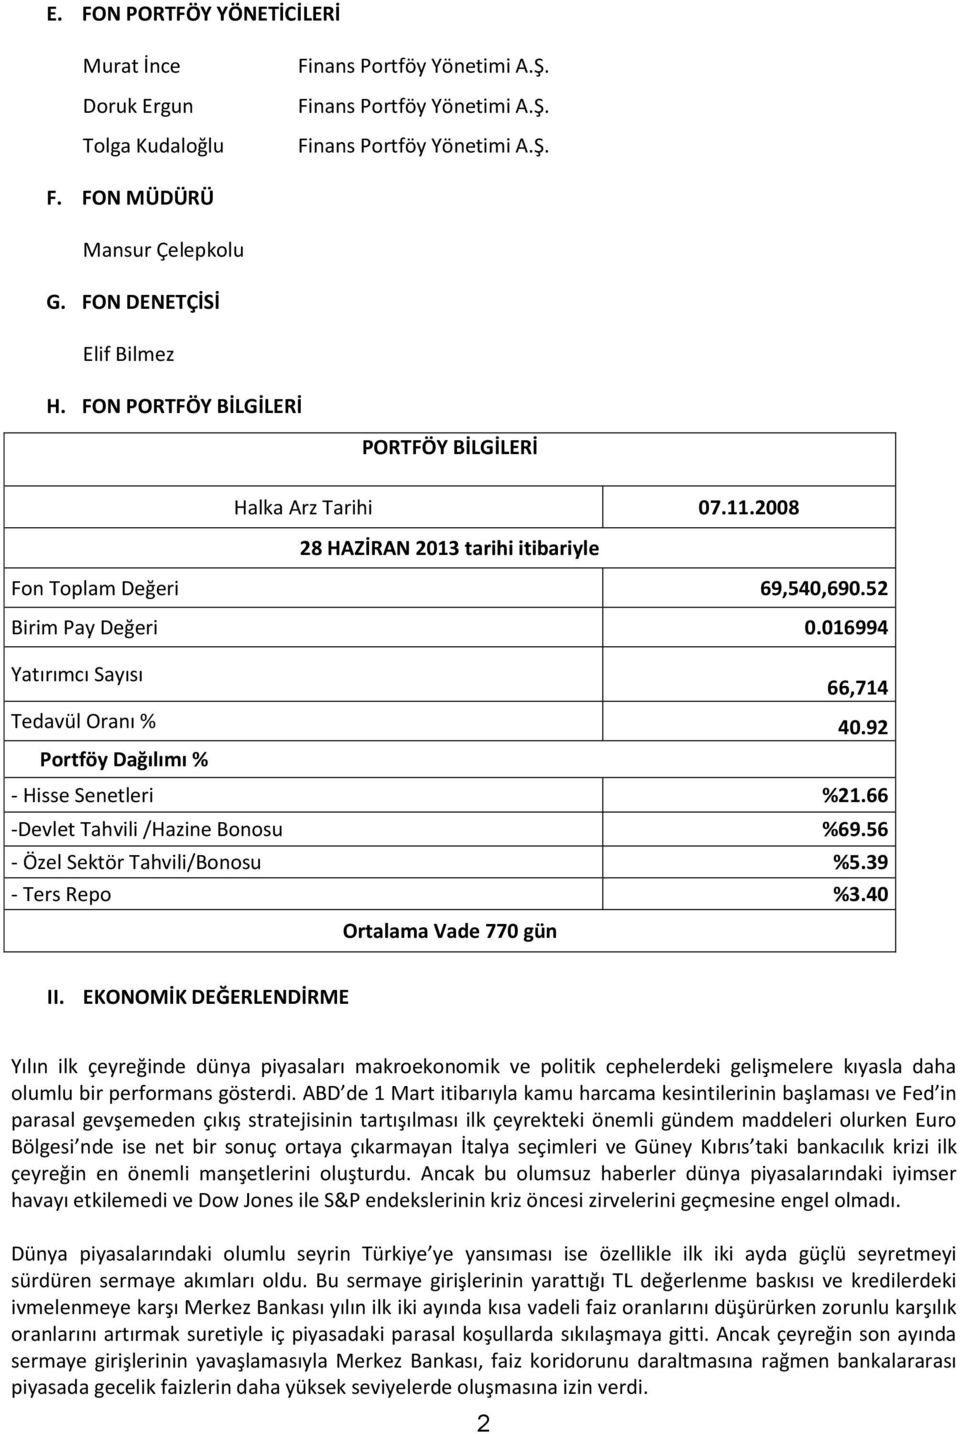 016994 Yatırımcı Sayısı 66,714 Tedavül Oranı % 40.92 Portföy Dağılımı % - Hisse Senetleri %21.66 -Devlet Tahvili /Hazine Bonosu %69.56 - Özel Sektör Tahvili/Bonosu %5.39 - Ters Repo %3.